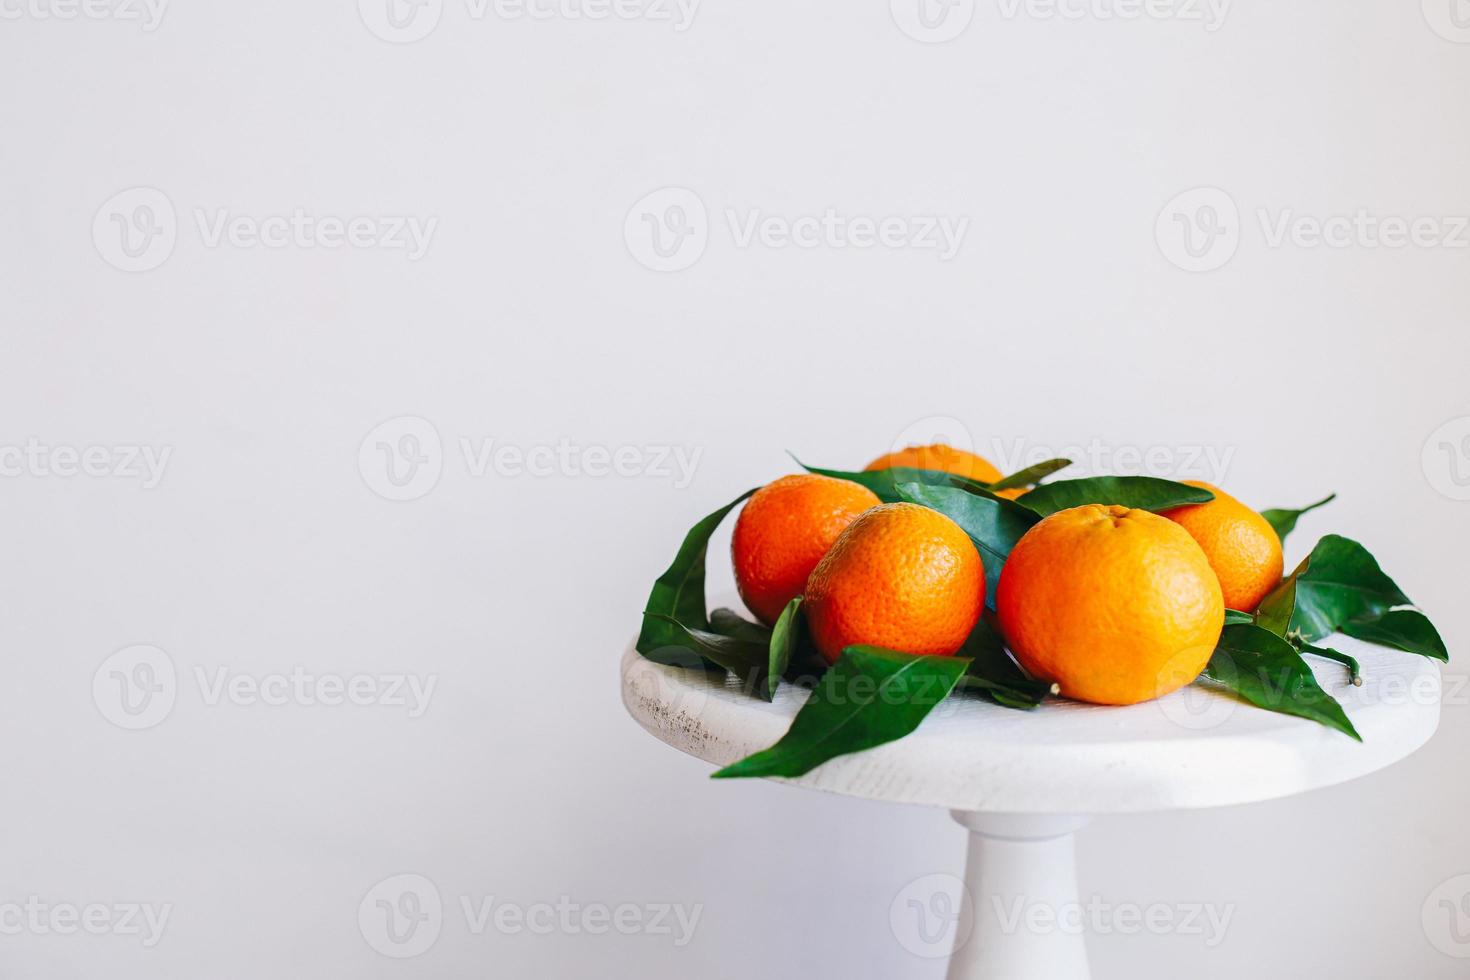 oranje mandarijnen op grijze achtergrond in nieuwjaarsdecor met bruine dennenappels en groene bladeren. kerstversiering met mandarijnen. heerlijke zoete clementine. foto